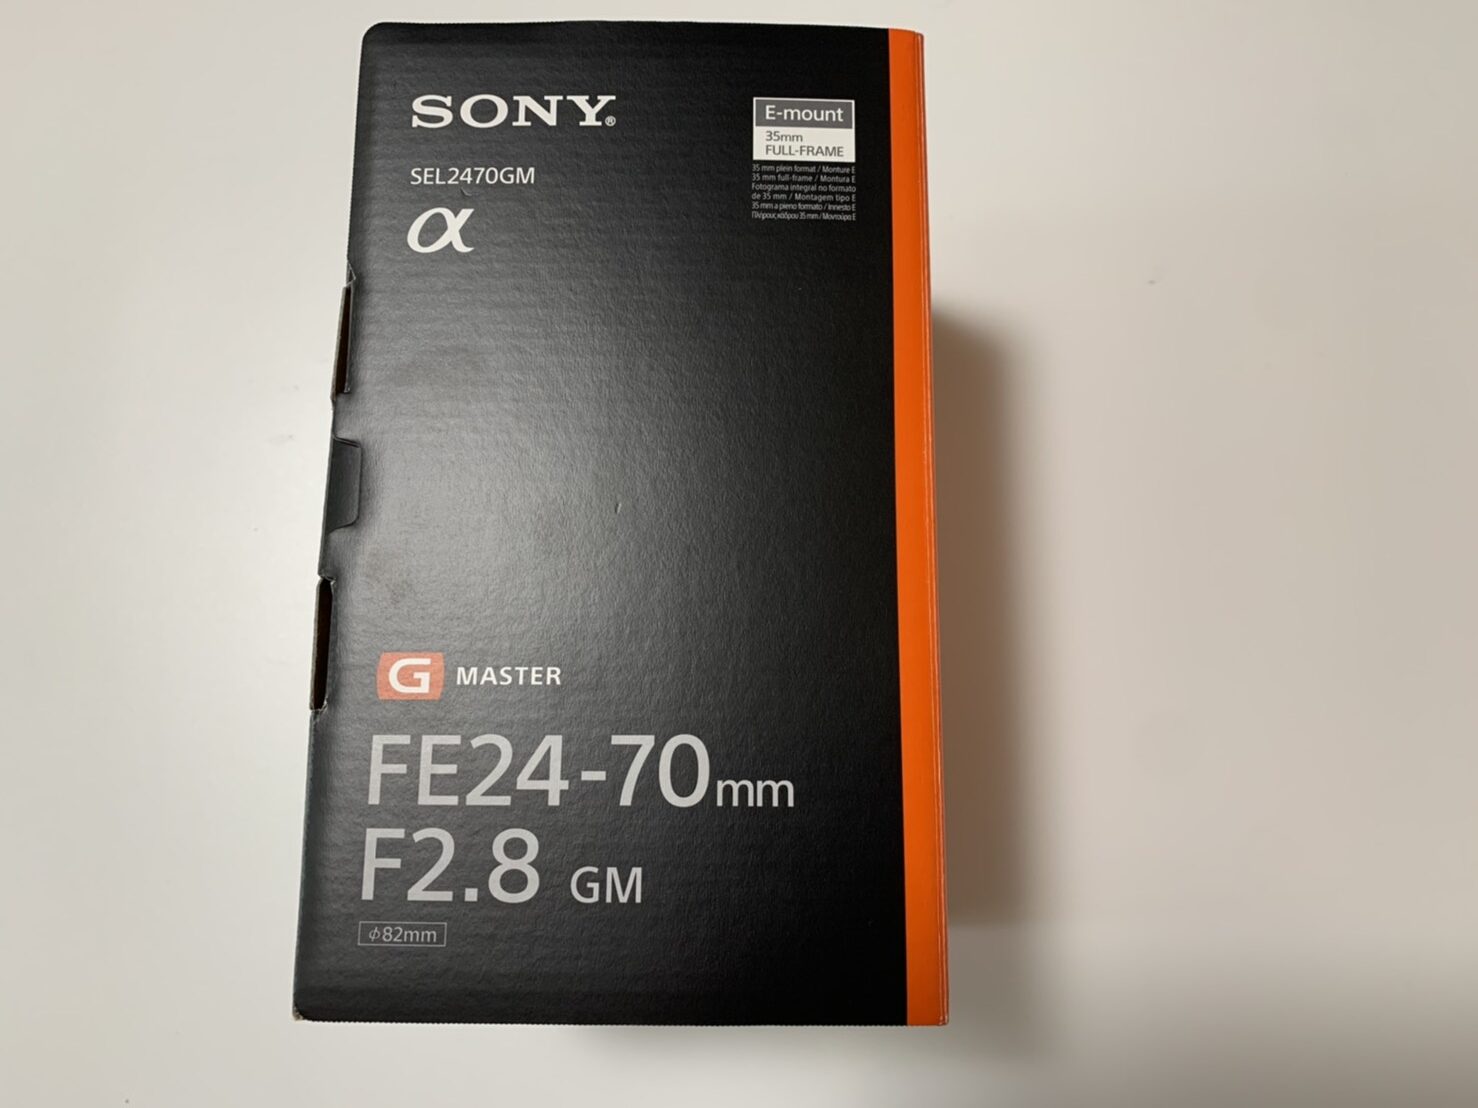 Sonyの純正レンズFE24-70買ってきたよ